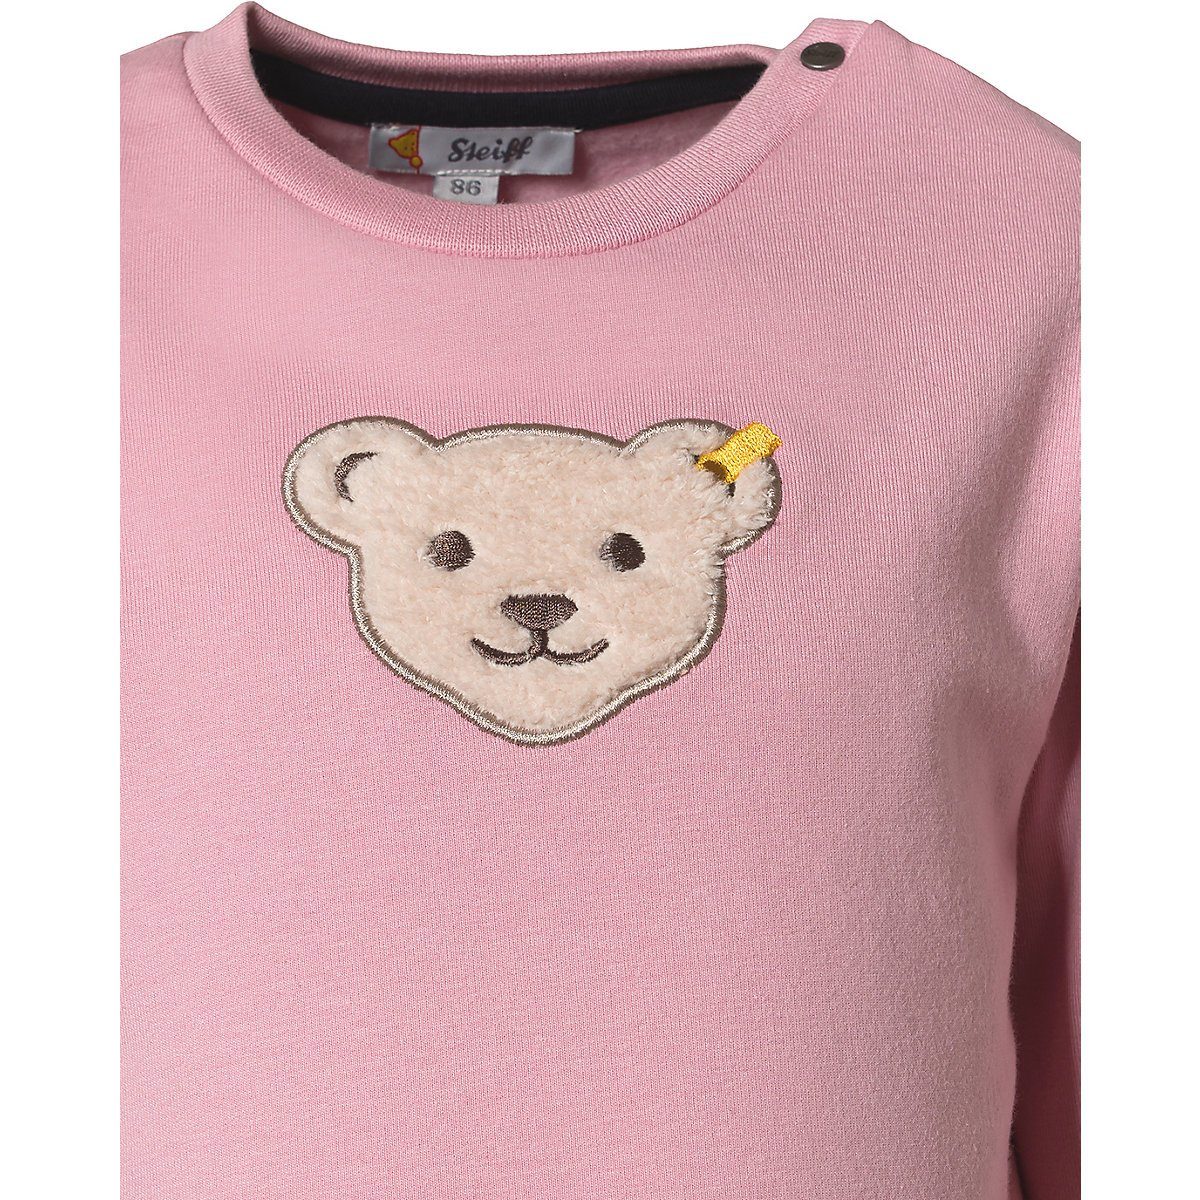 Kinder Sweater Steiff Sweatshirt Baby Sweatshirt für Mädchen